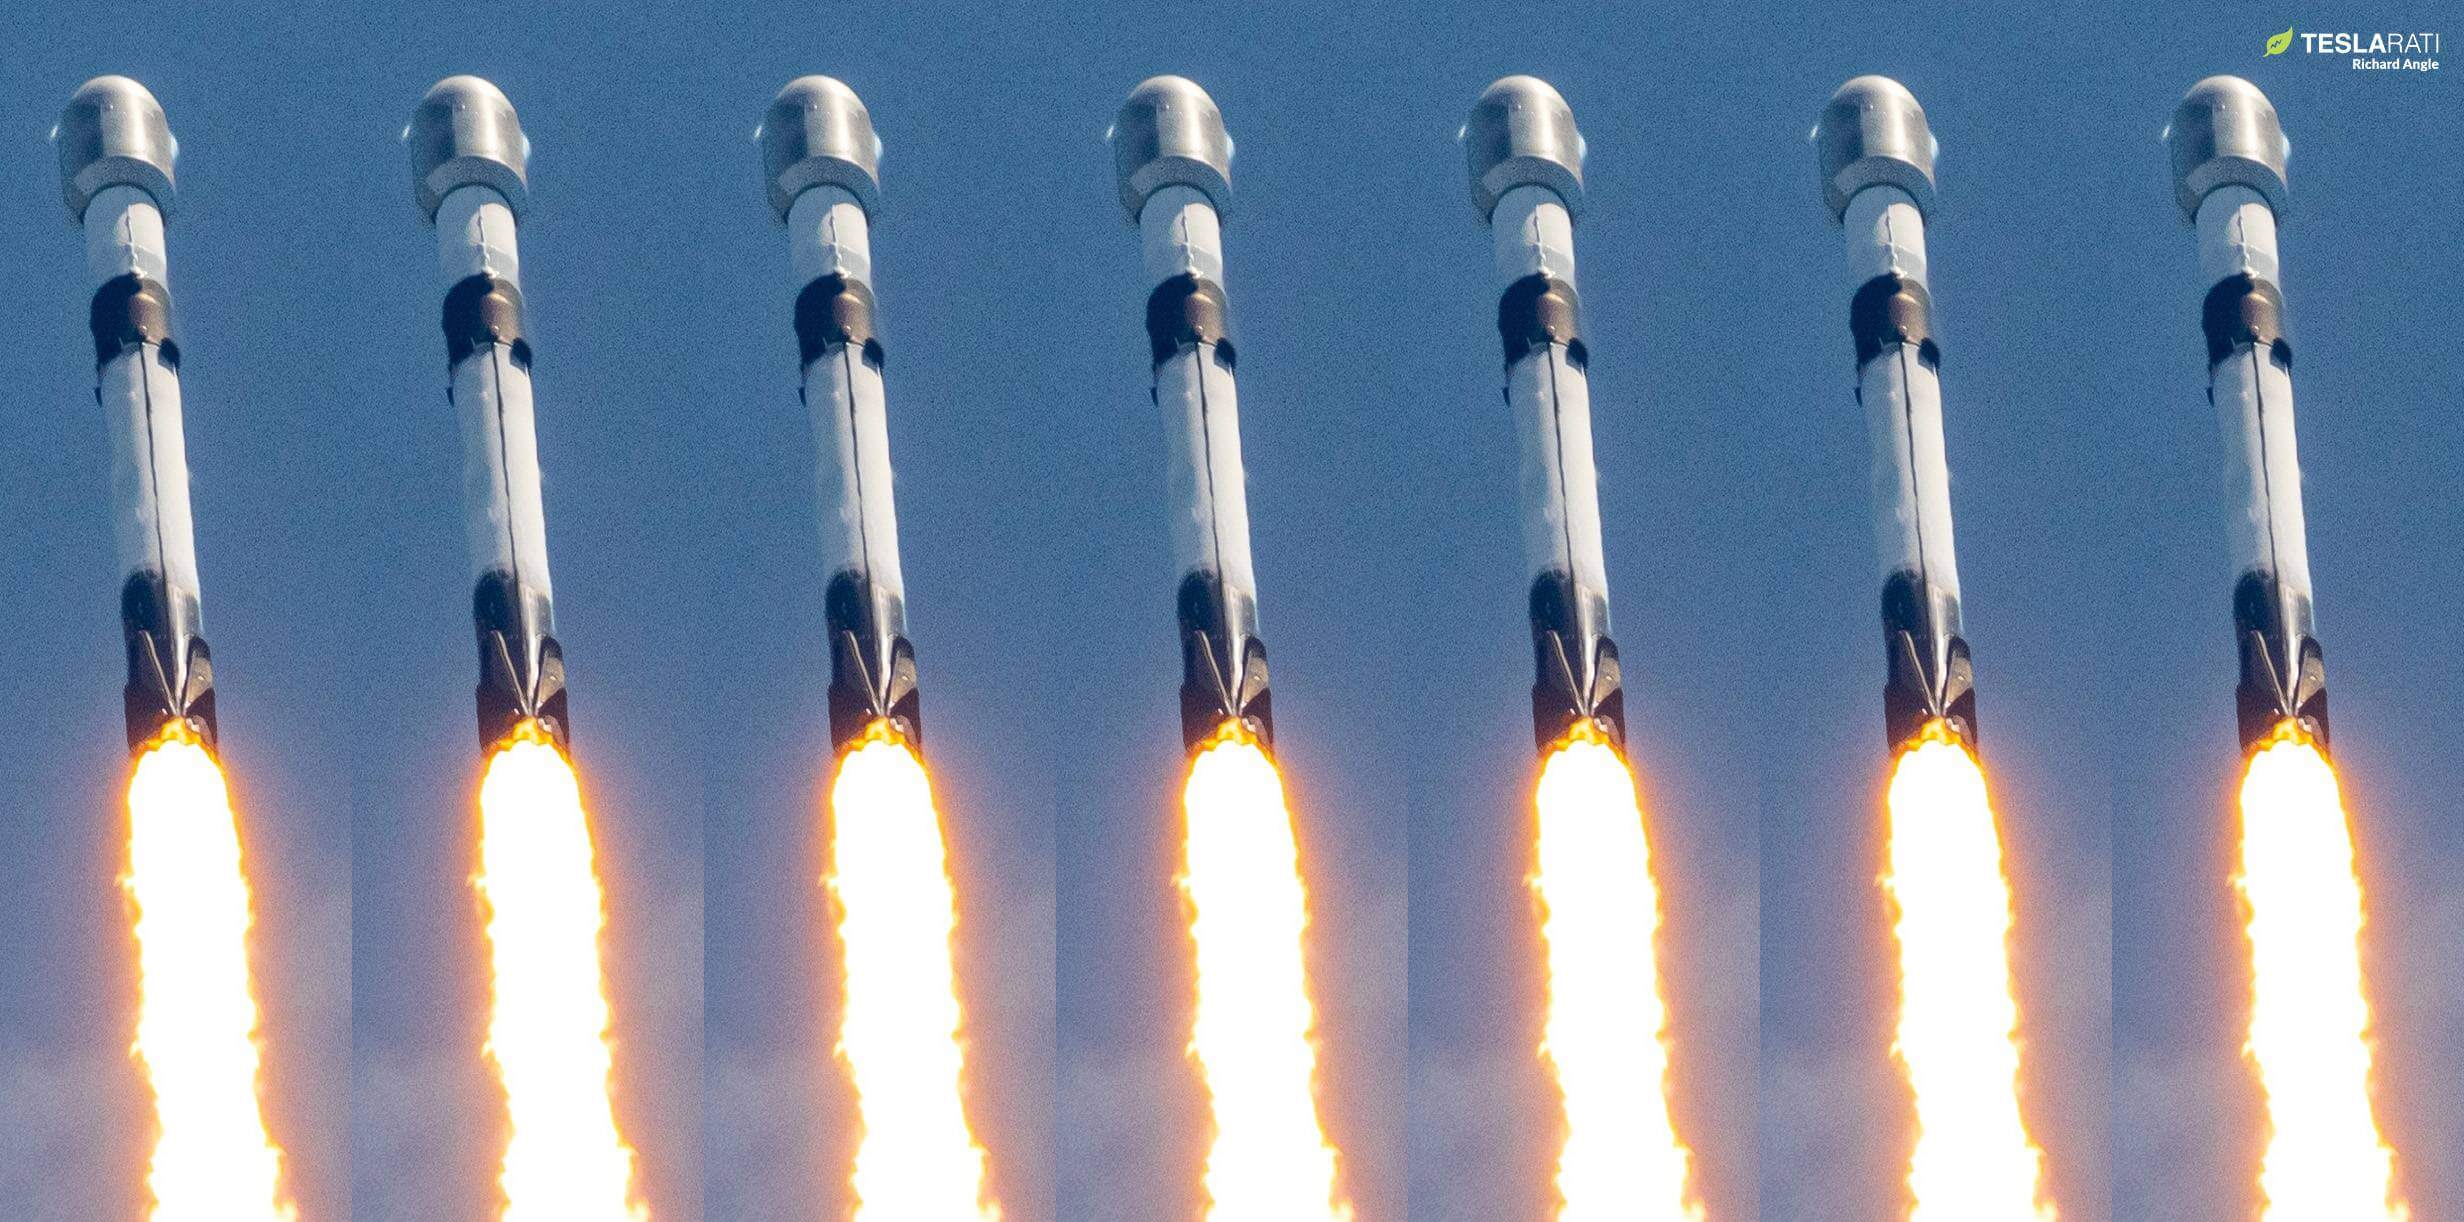 Цель Илона Маска по 100 запускам SpaceX в 2023 году выглядит на удивление достижимой.